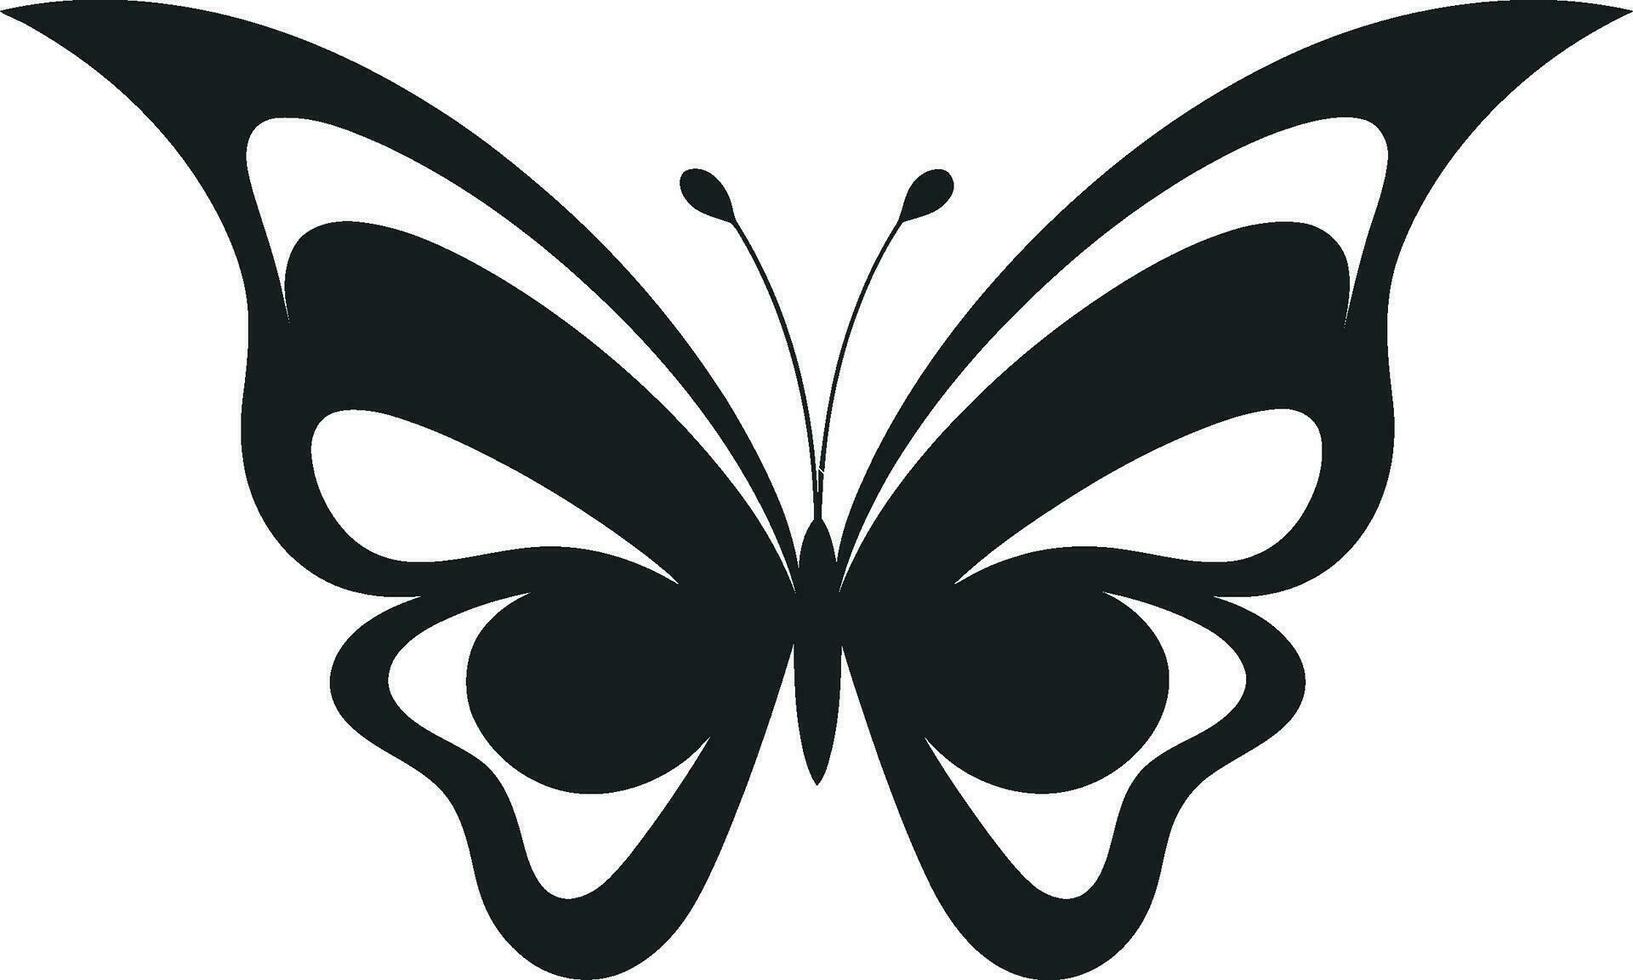 Sculpted Grace in Noir Butterfly Logo Monochromatic Beauty Black Vector Butterfly